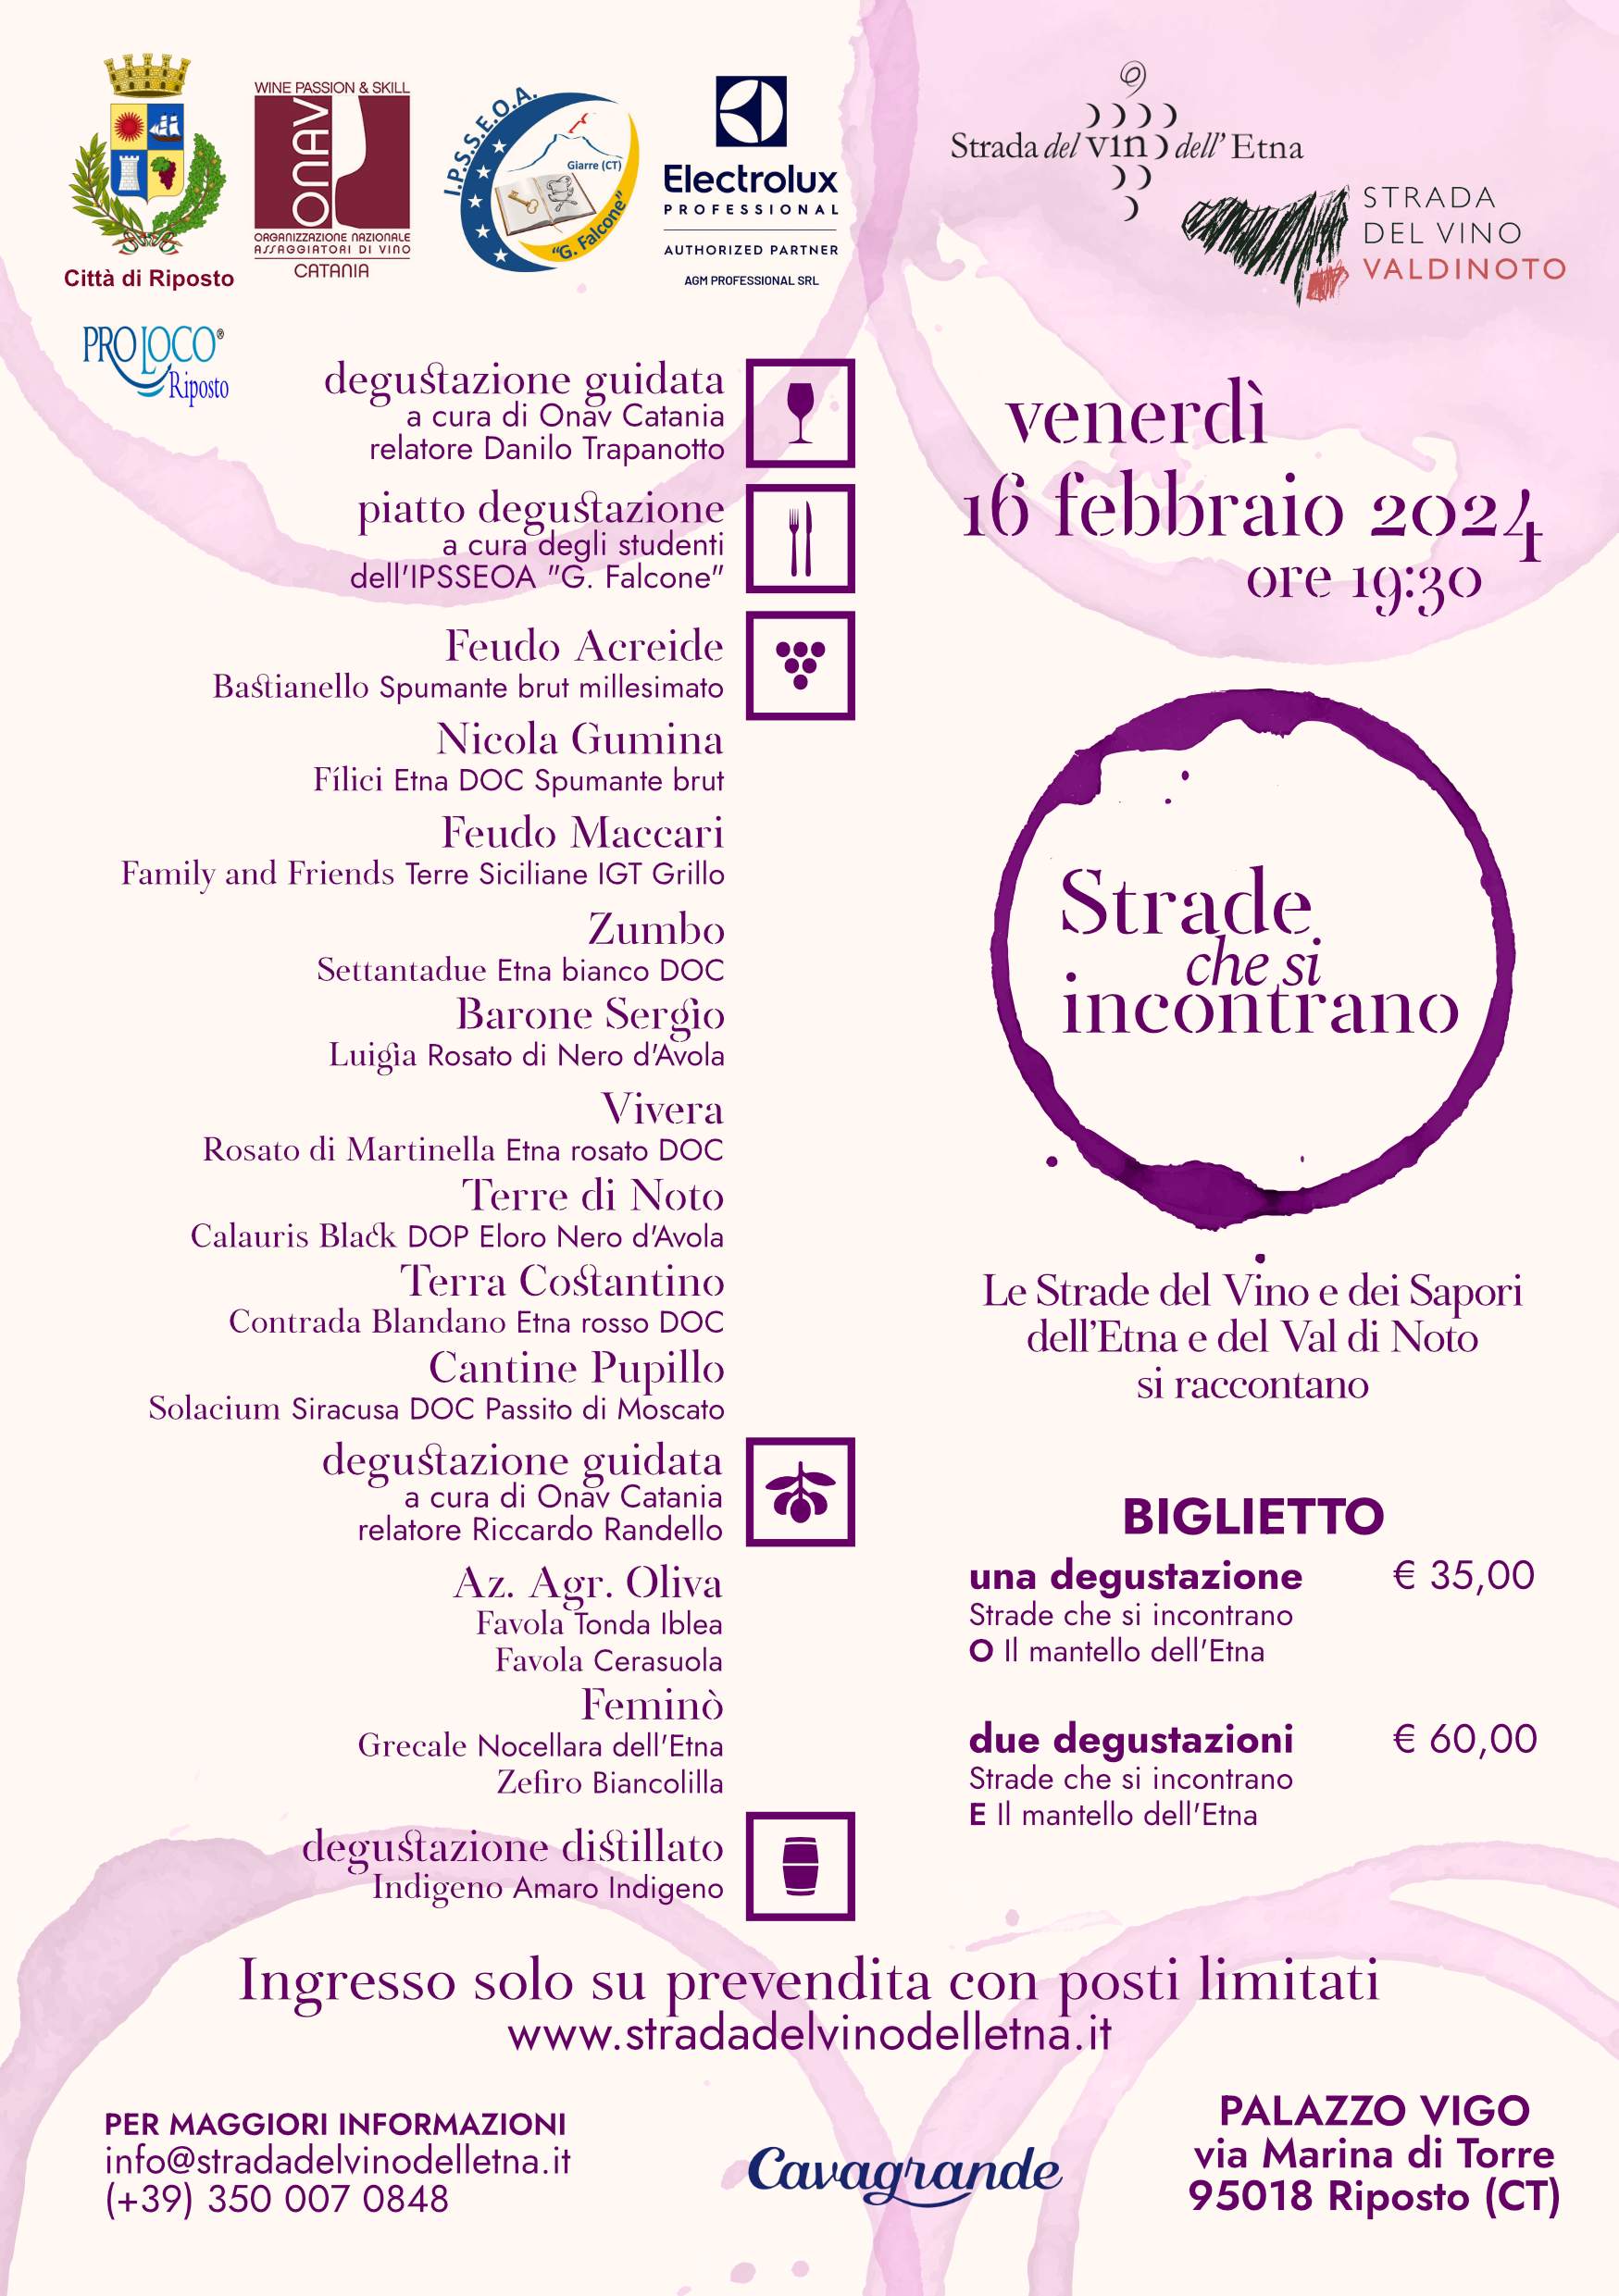 Amanti del vino, unitevi! Il prossimo 16 febbraio, VIVERA vi invita a un'esclusiva degustazione di vini siciliani presso il Palazzo Vigo a Riposto, in provincia di Catania